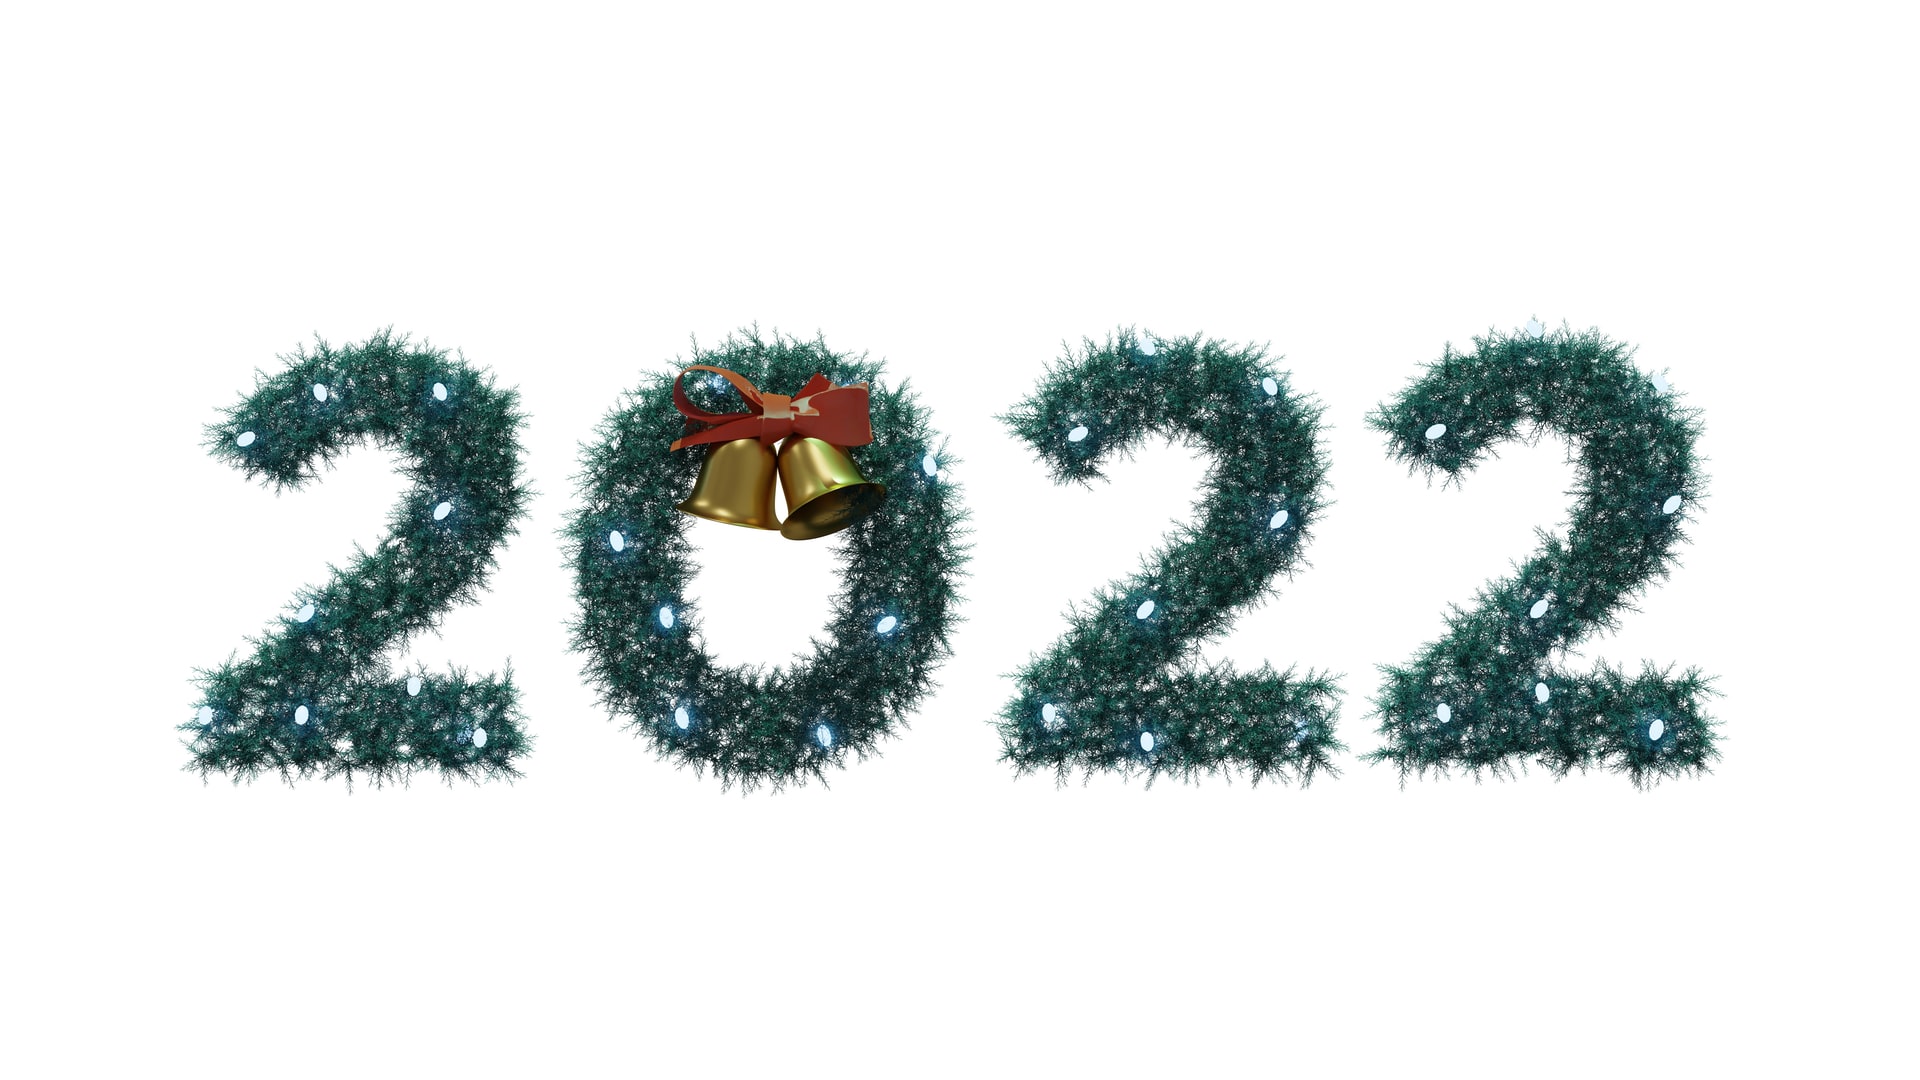 Yeni yıl mesajları resimli 2022 | Komik, uzun, kısa en güzel yılbaşı mesajları | Sevgiliye, arkadaşa mesajlar